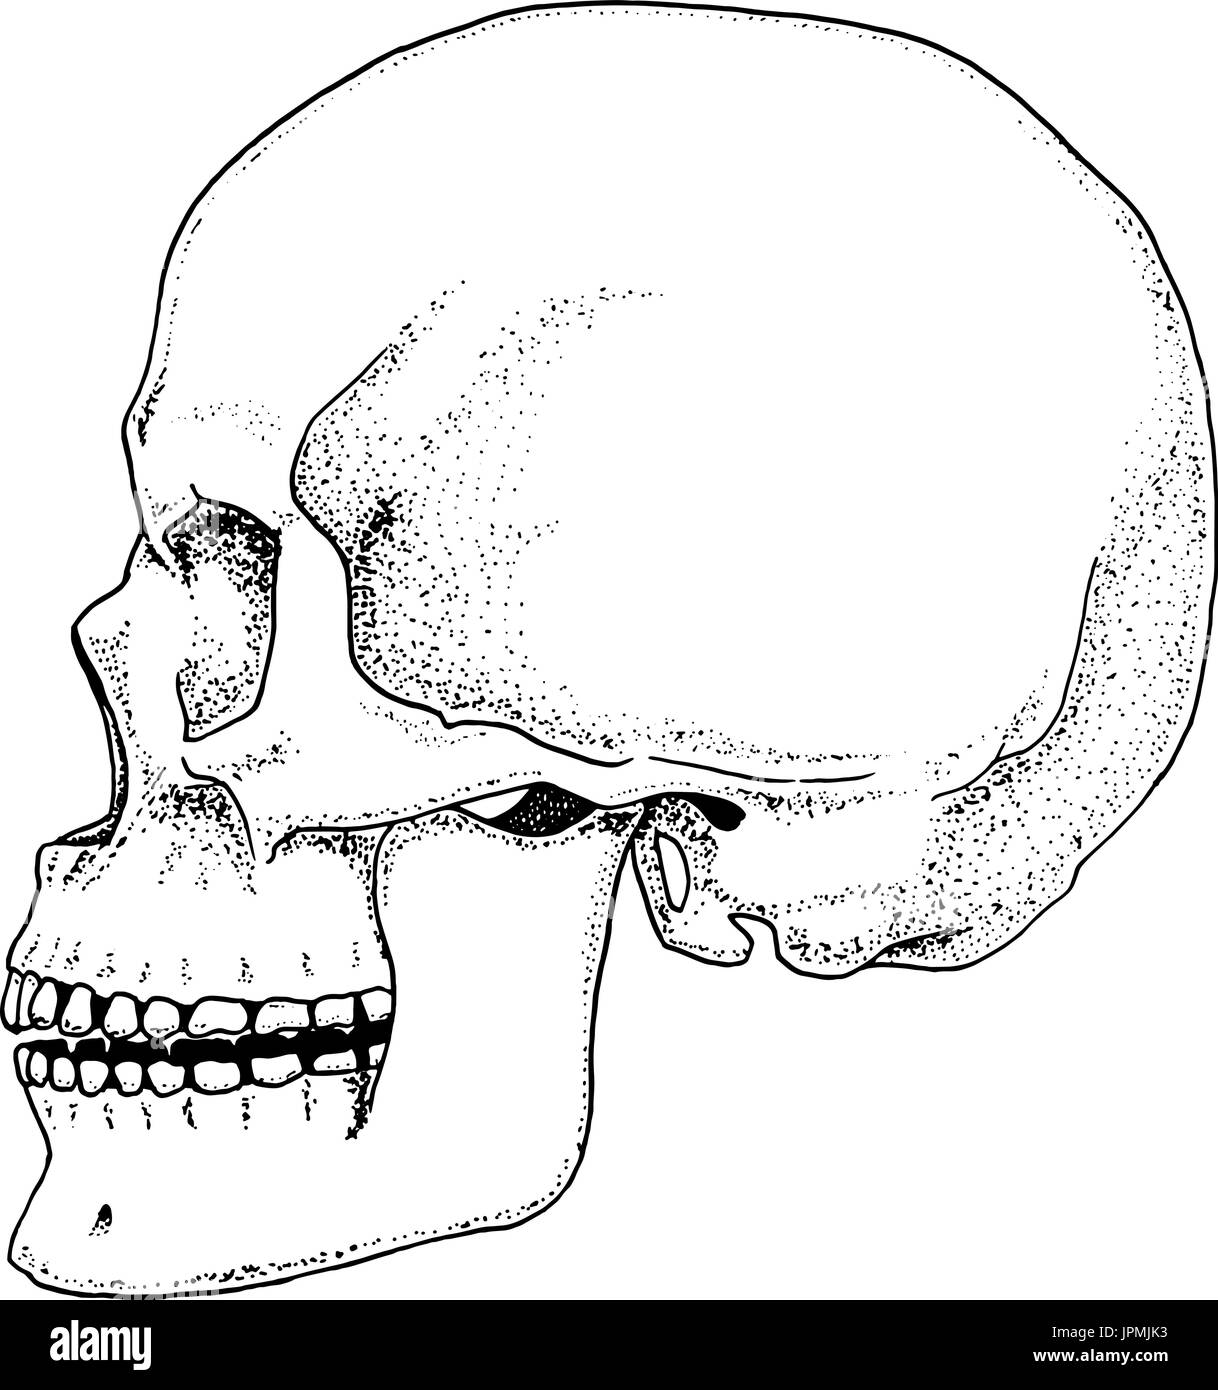 Biologia Umana Anatomia Illustrazione Incisi Disegnati A Mano Nel Vecchio Disegno E Stile Vintage Cranio O Scheletro Di Silhouette Le Ossa Del Corpo Vista Frontale O Faccia Immagine E Vettoriale Alamy